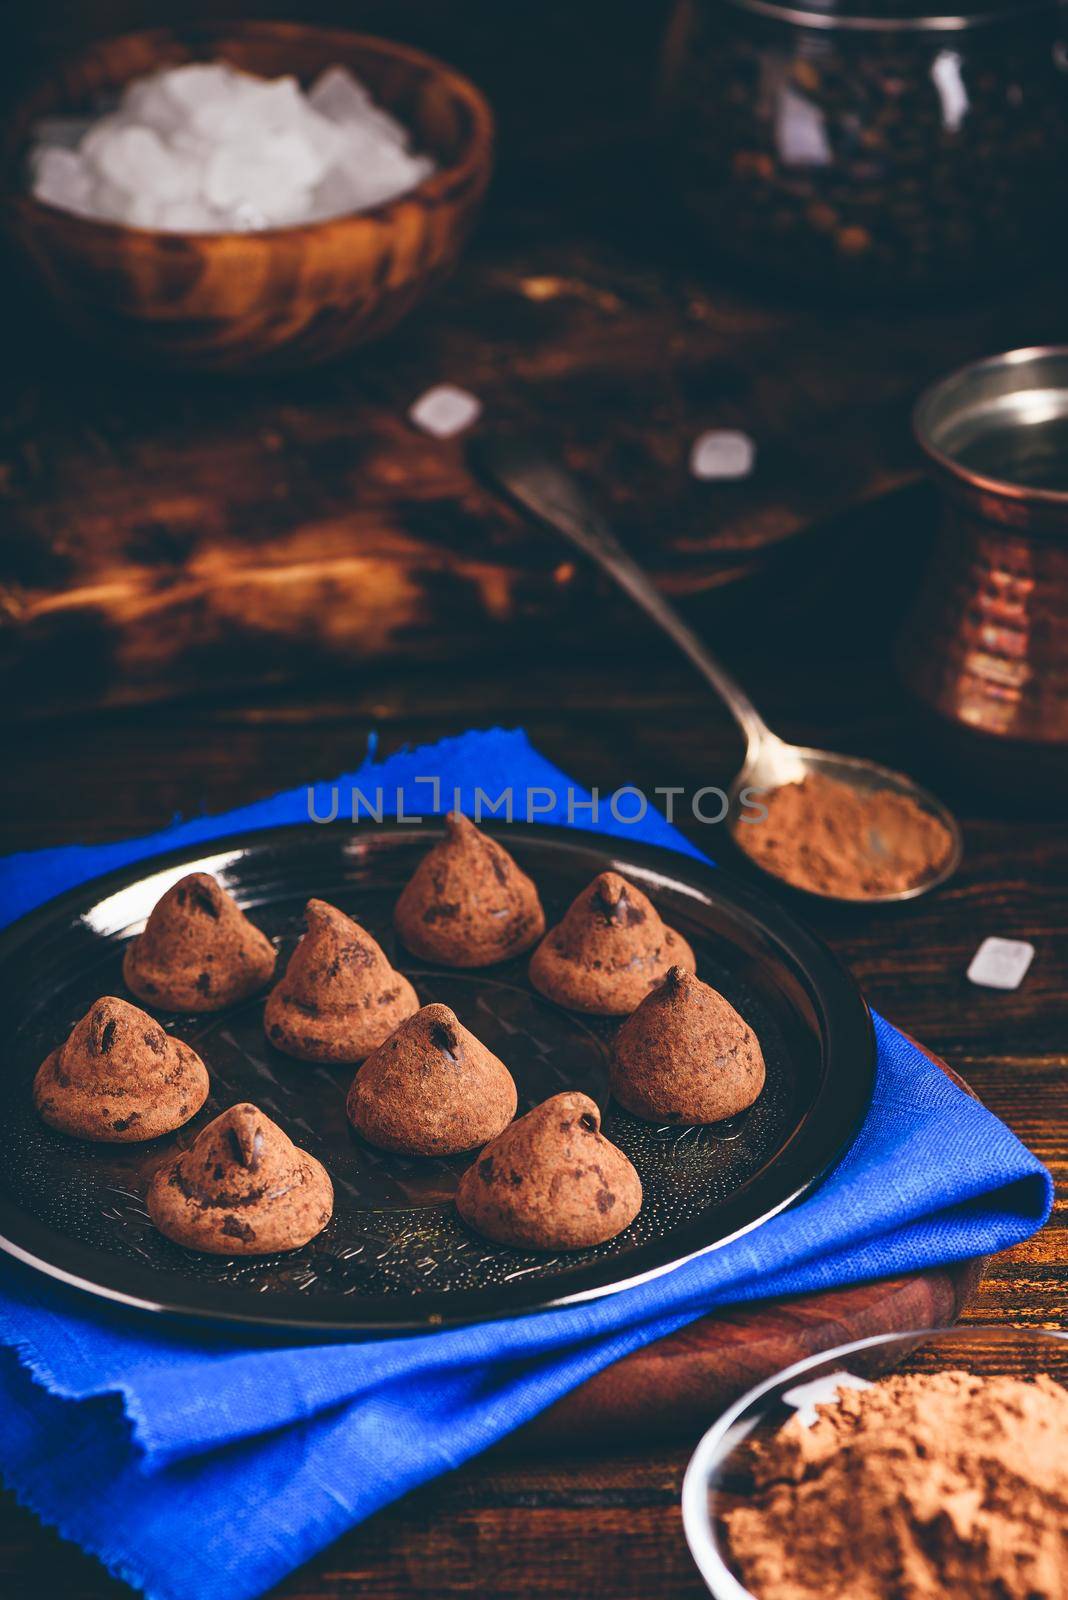 Homemade truffles with dark chocolate by Seva_blsv